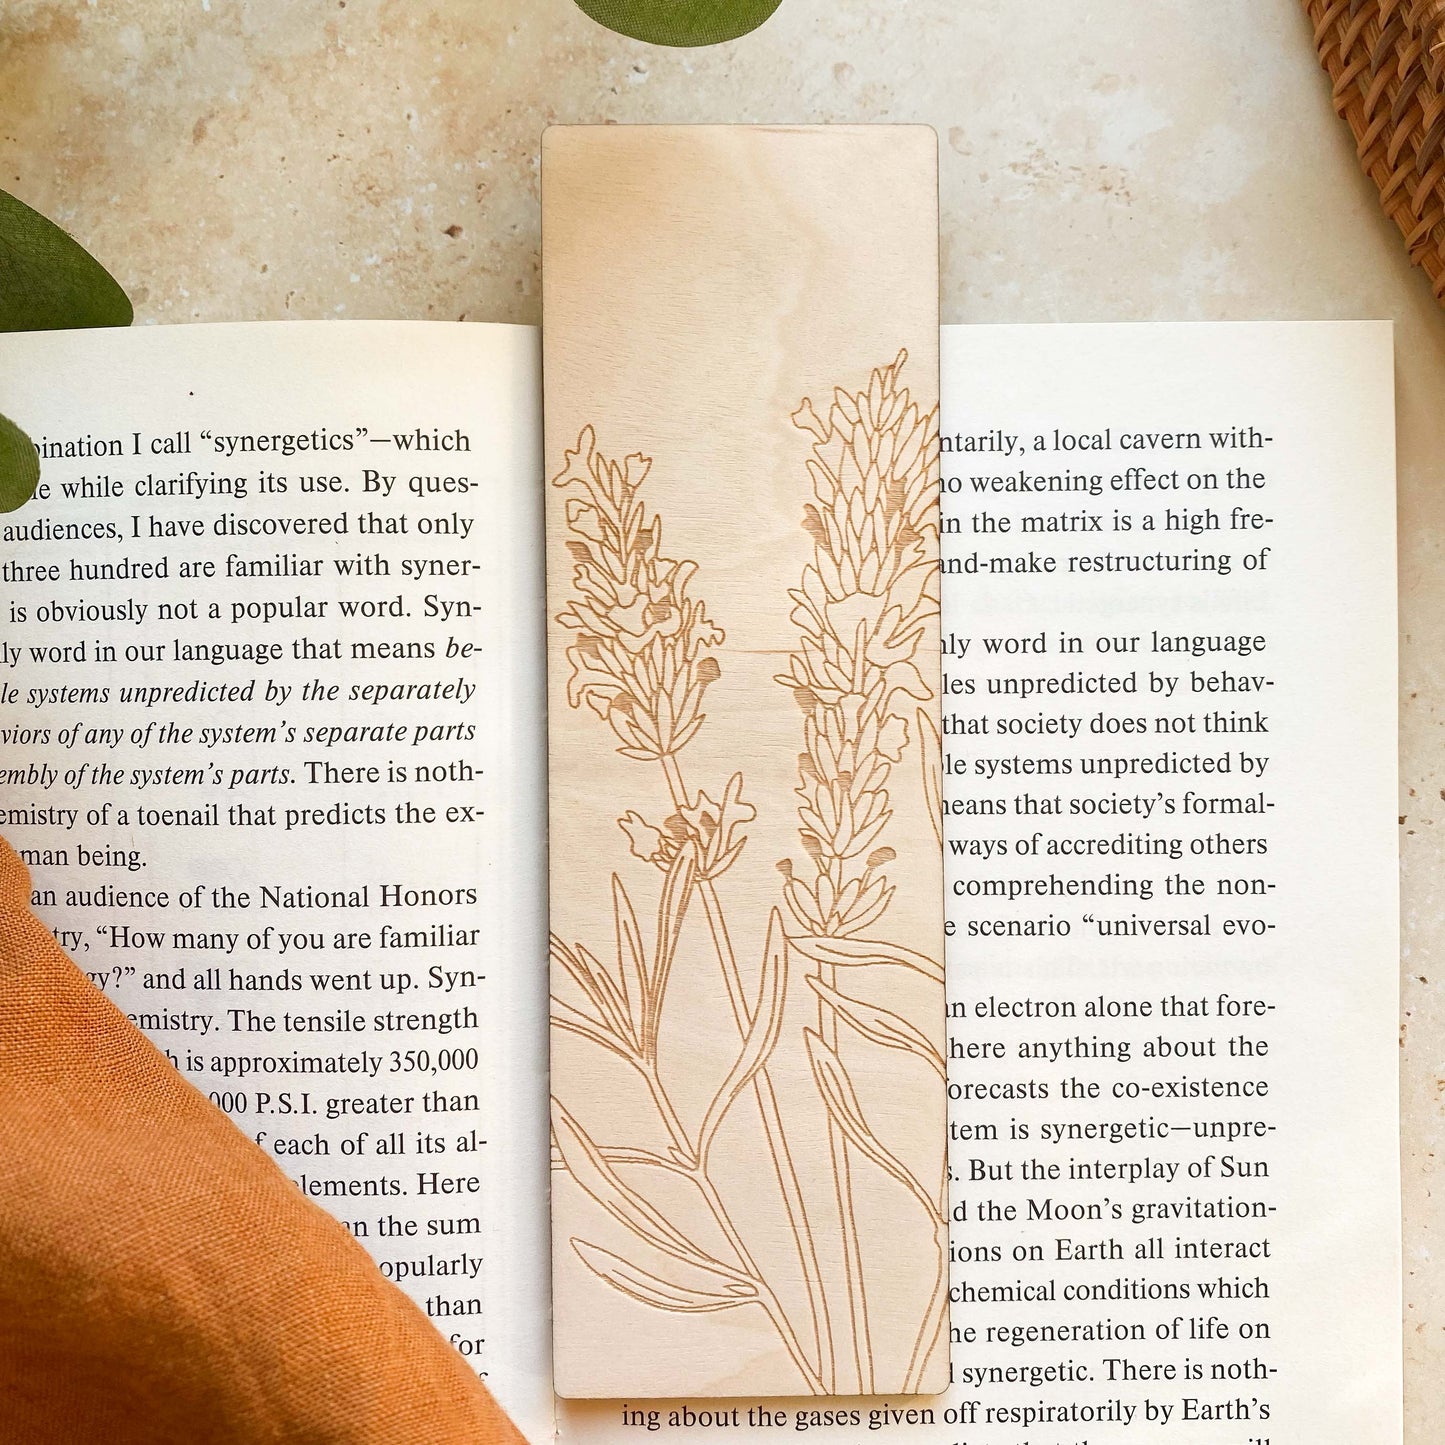 Lavender Wooden Bookmark